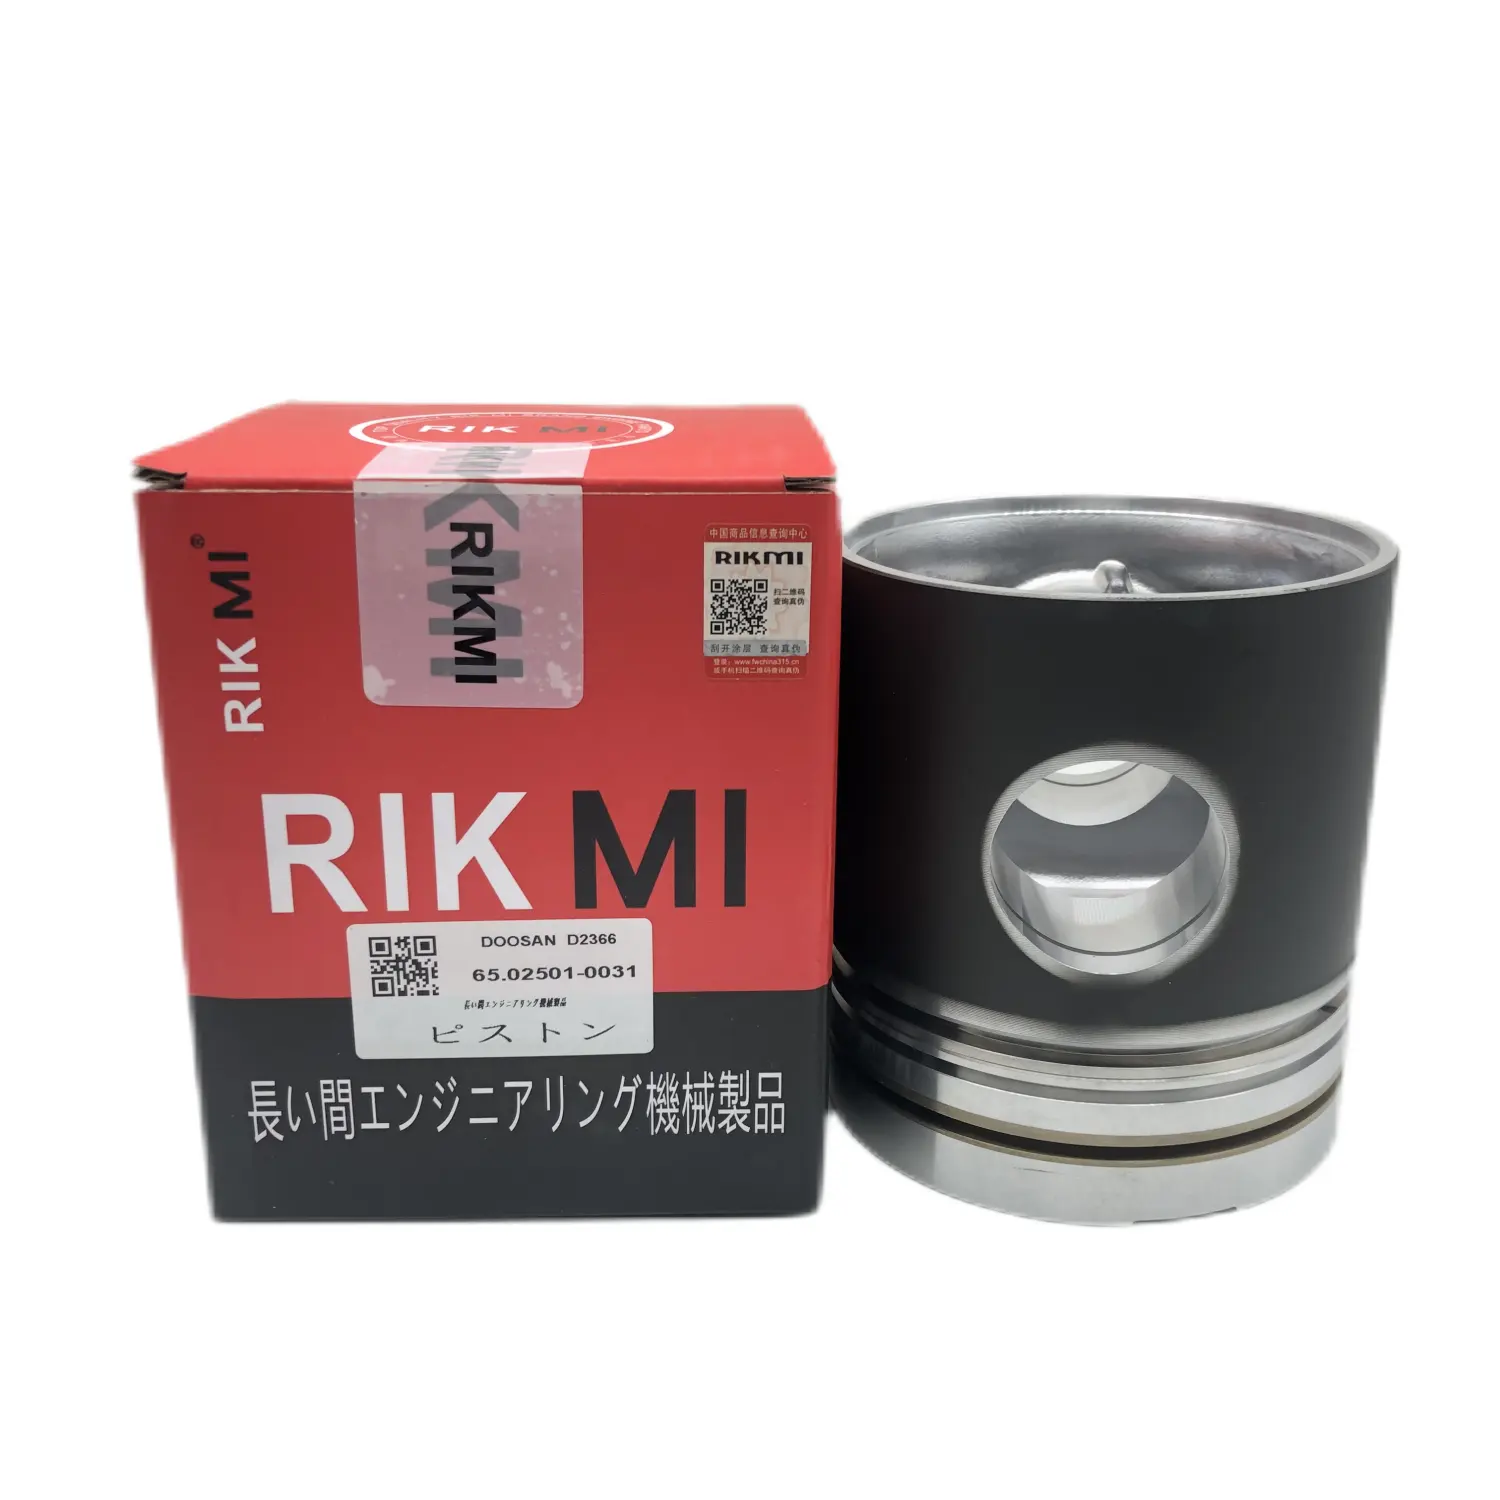 Rikmi pistão d2366 para maquinaria de motor diesel, kit de reparo direto de fábrica, peças do motor 65.02501-0031